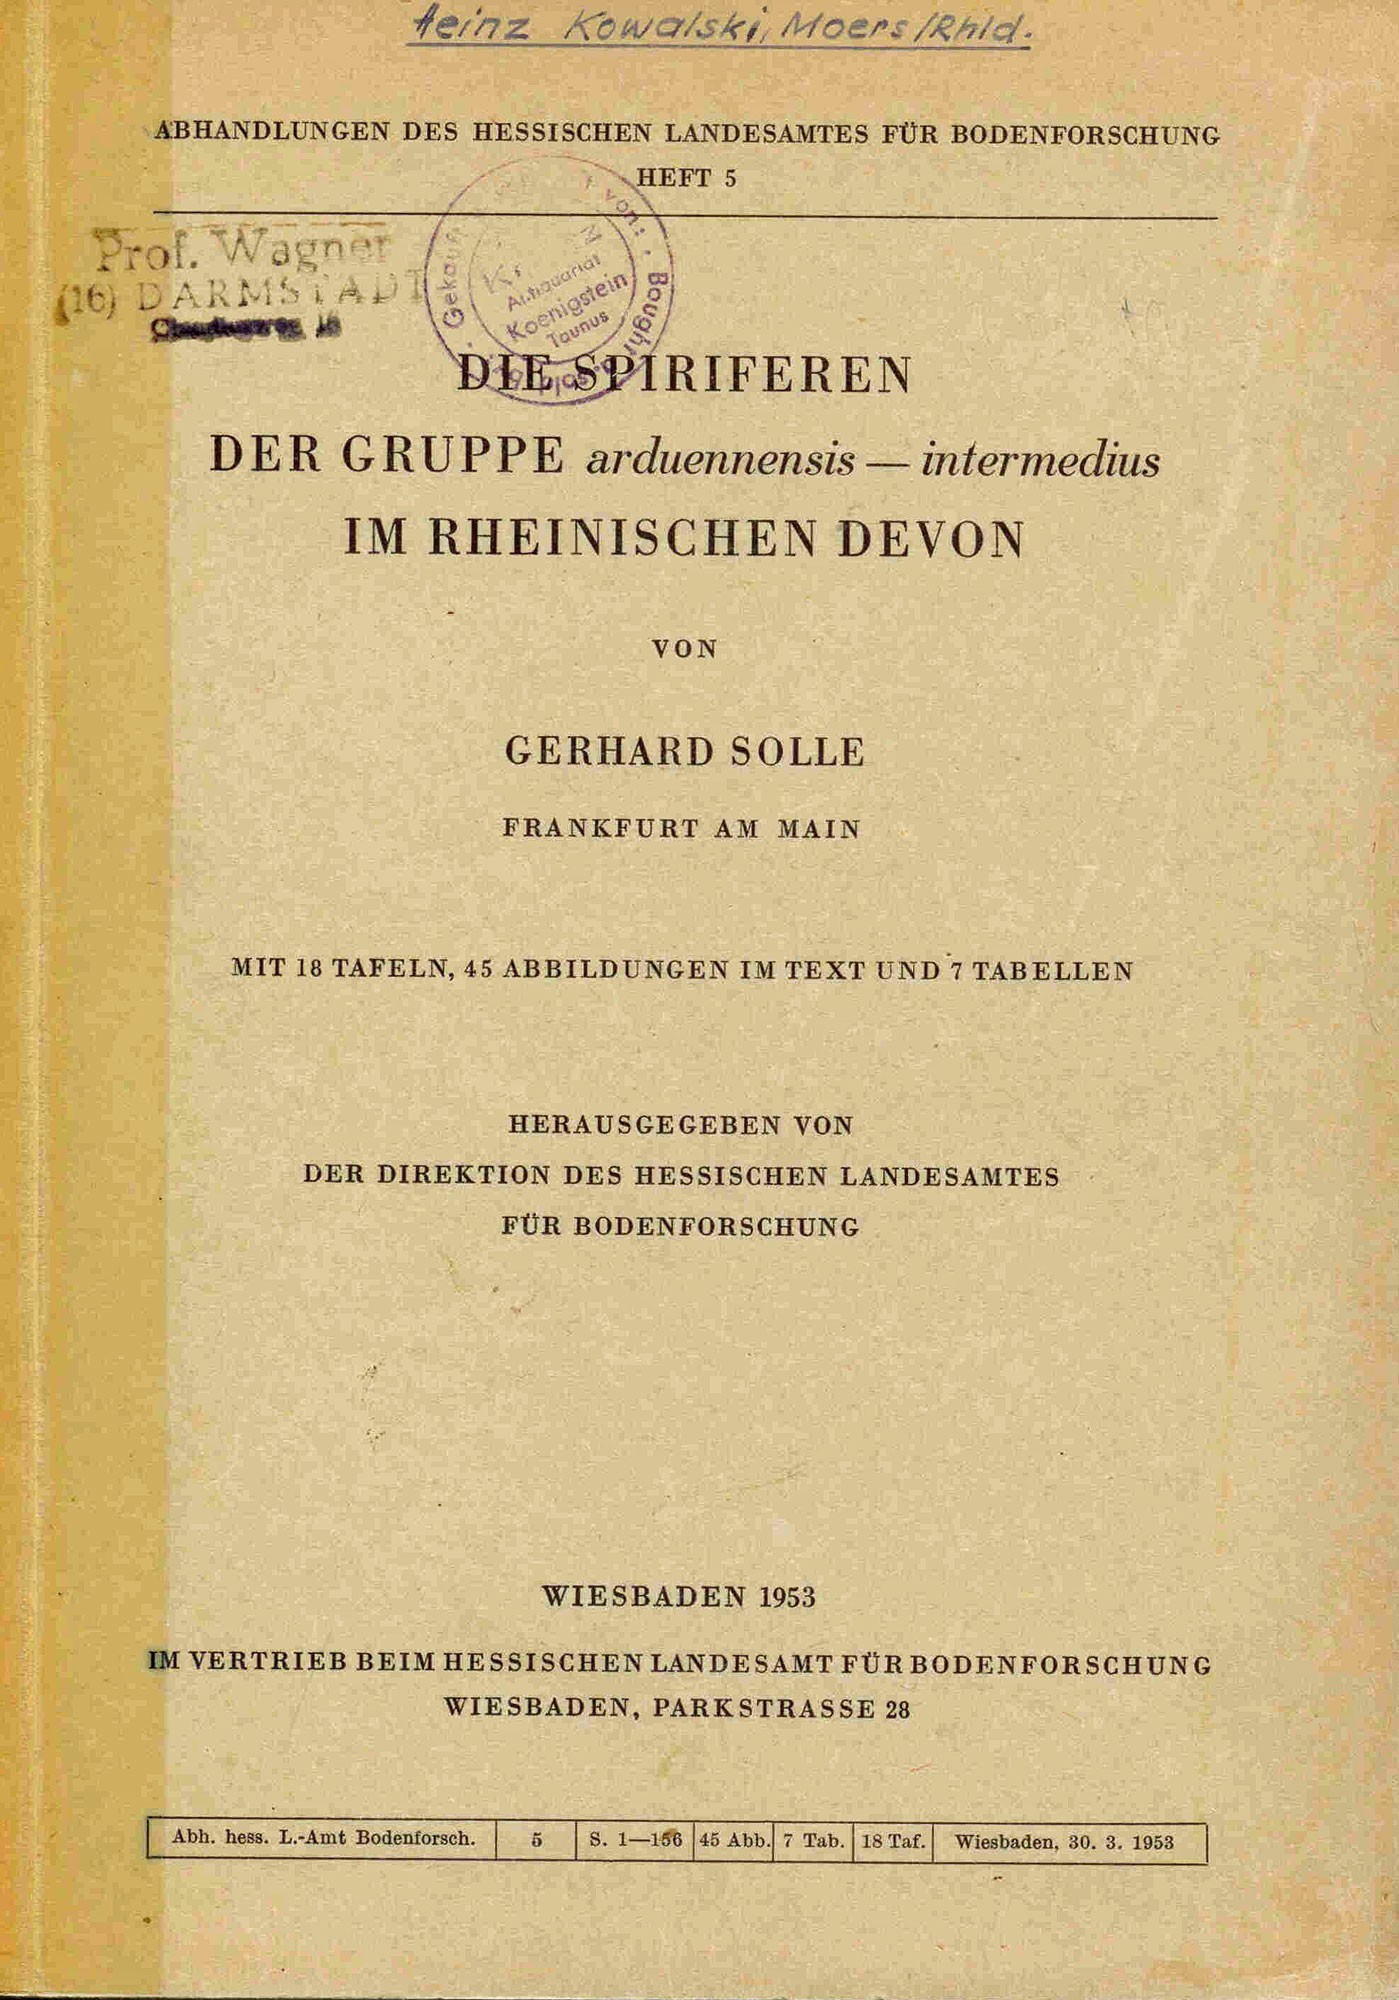 Solle, G.: Die Spiriferen der Gruppe arduennensis-intermedius im rheinischen Devon. 